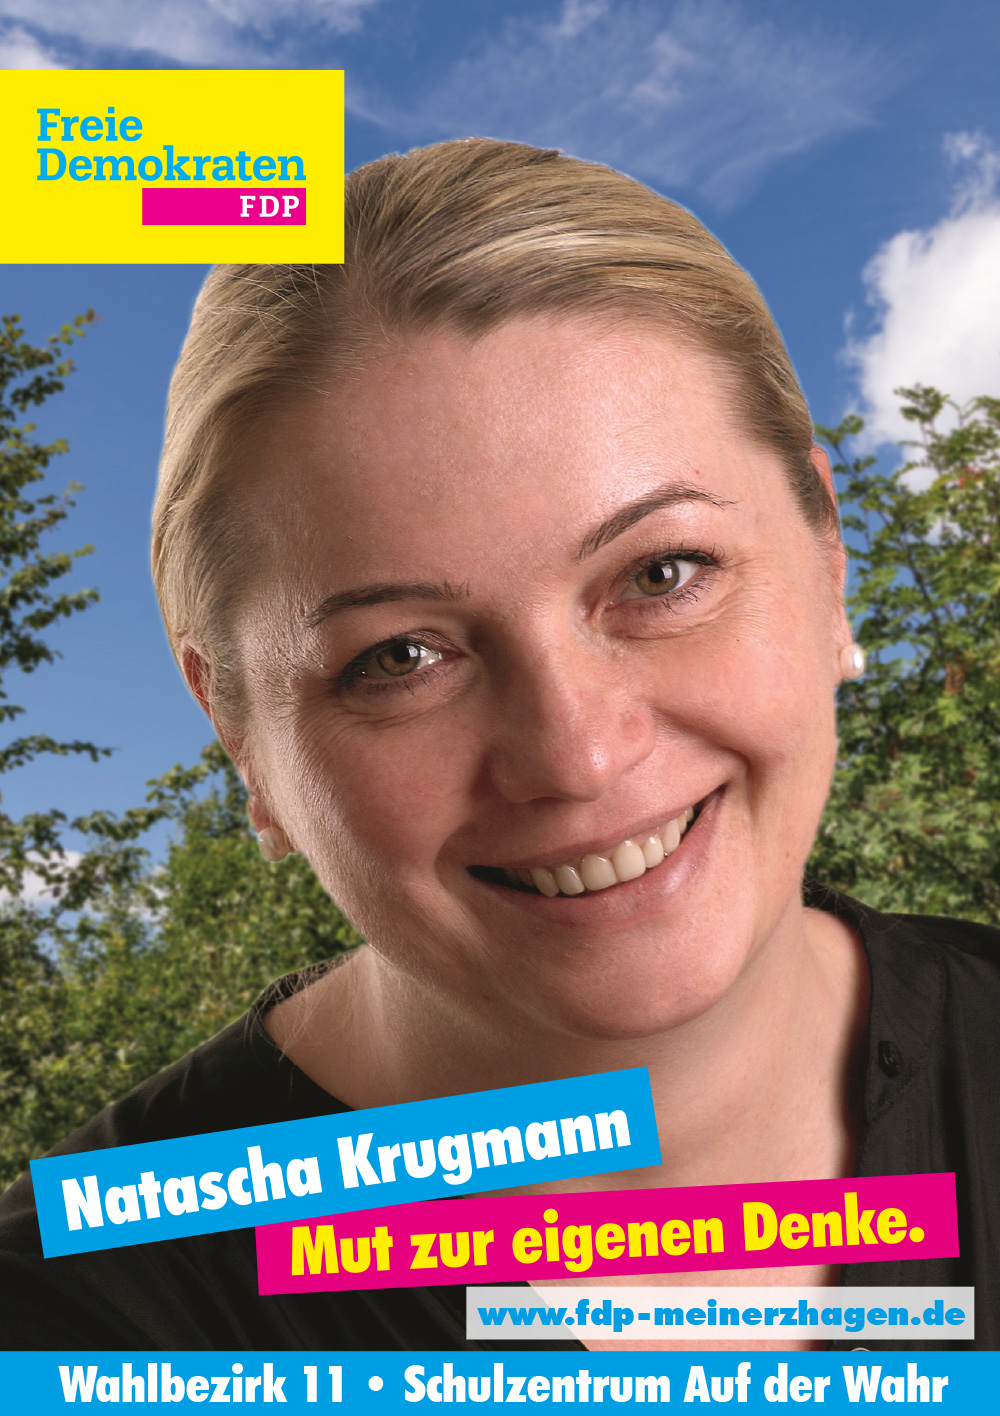 Wahlbezirk 11 - Natascha Krugmann